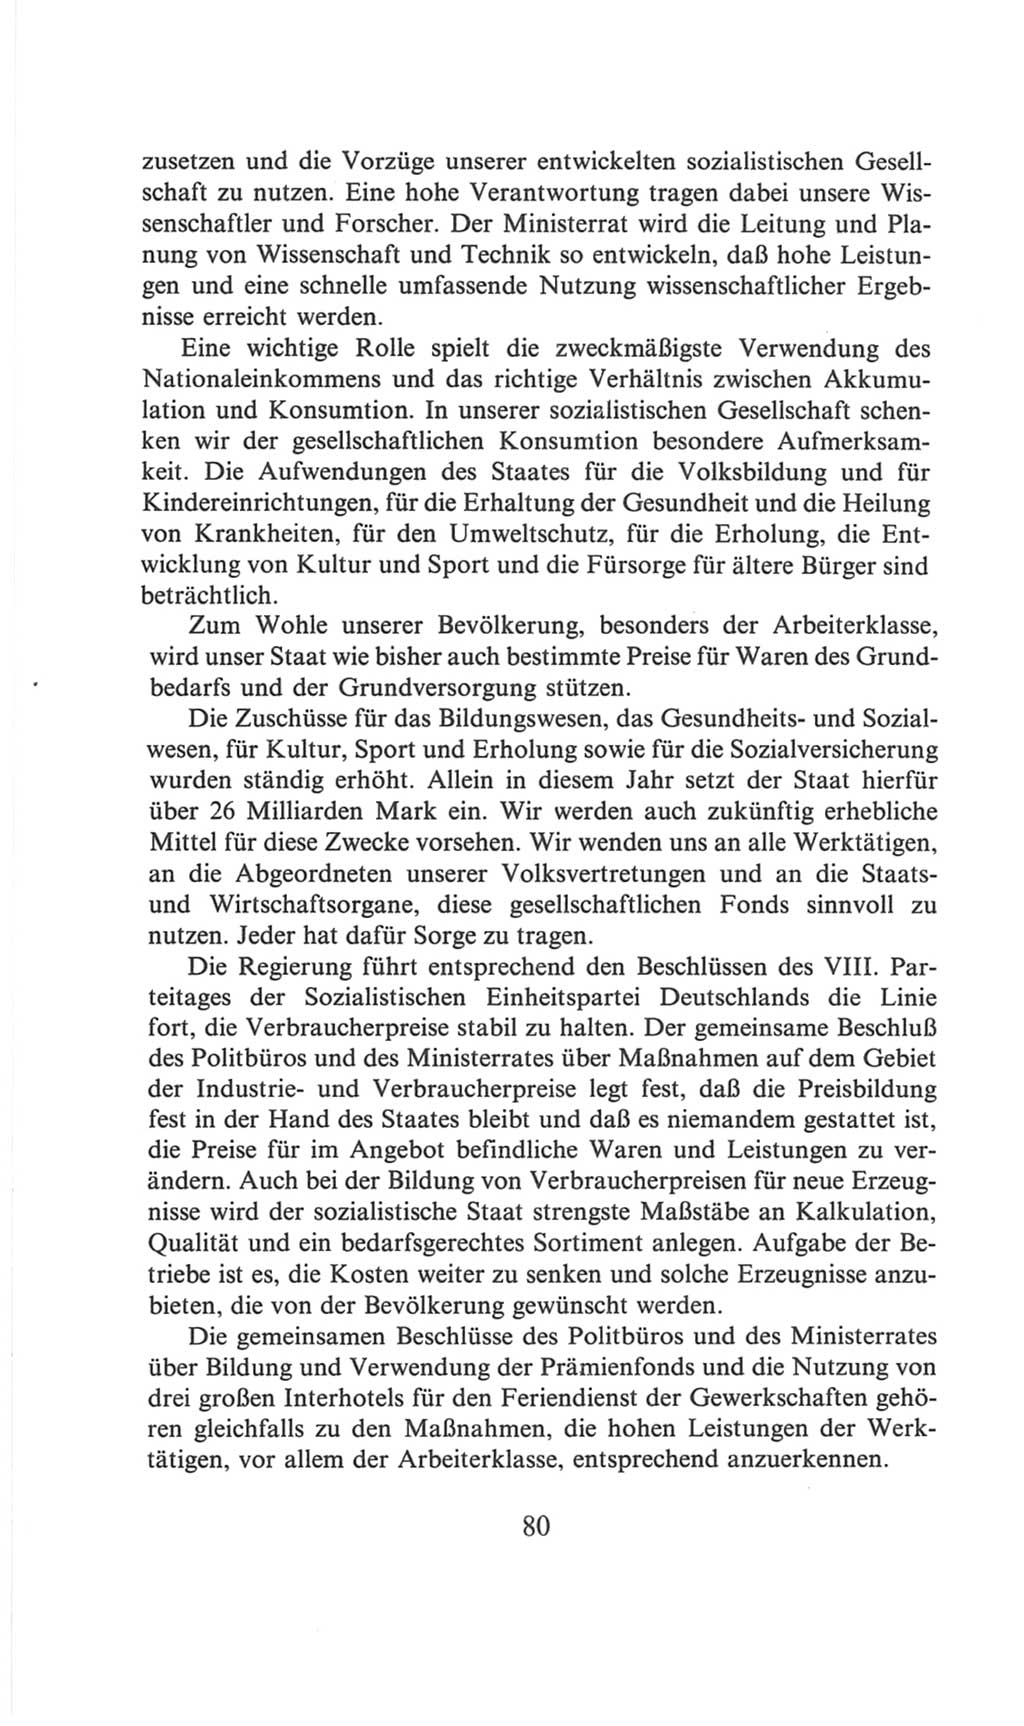 Volkskammer (VK) der Deutschen Demokratischen Republik (DDR), 6. Wahlperiode 1971-1976, Seite 80 (VK. DDR 6. WP. 1971-1976, S. 80)